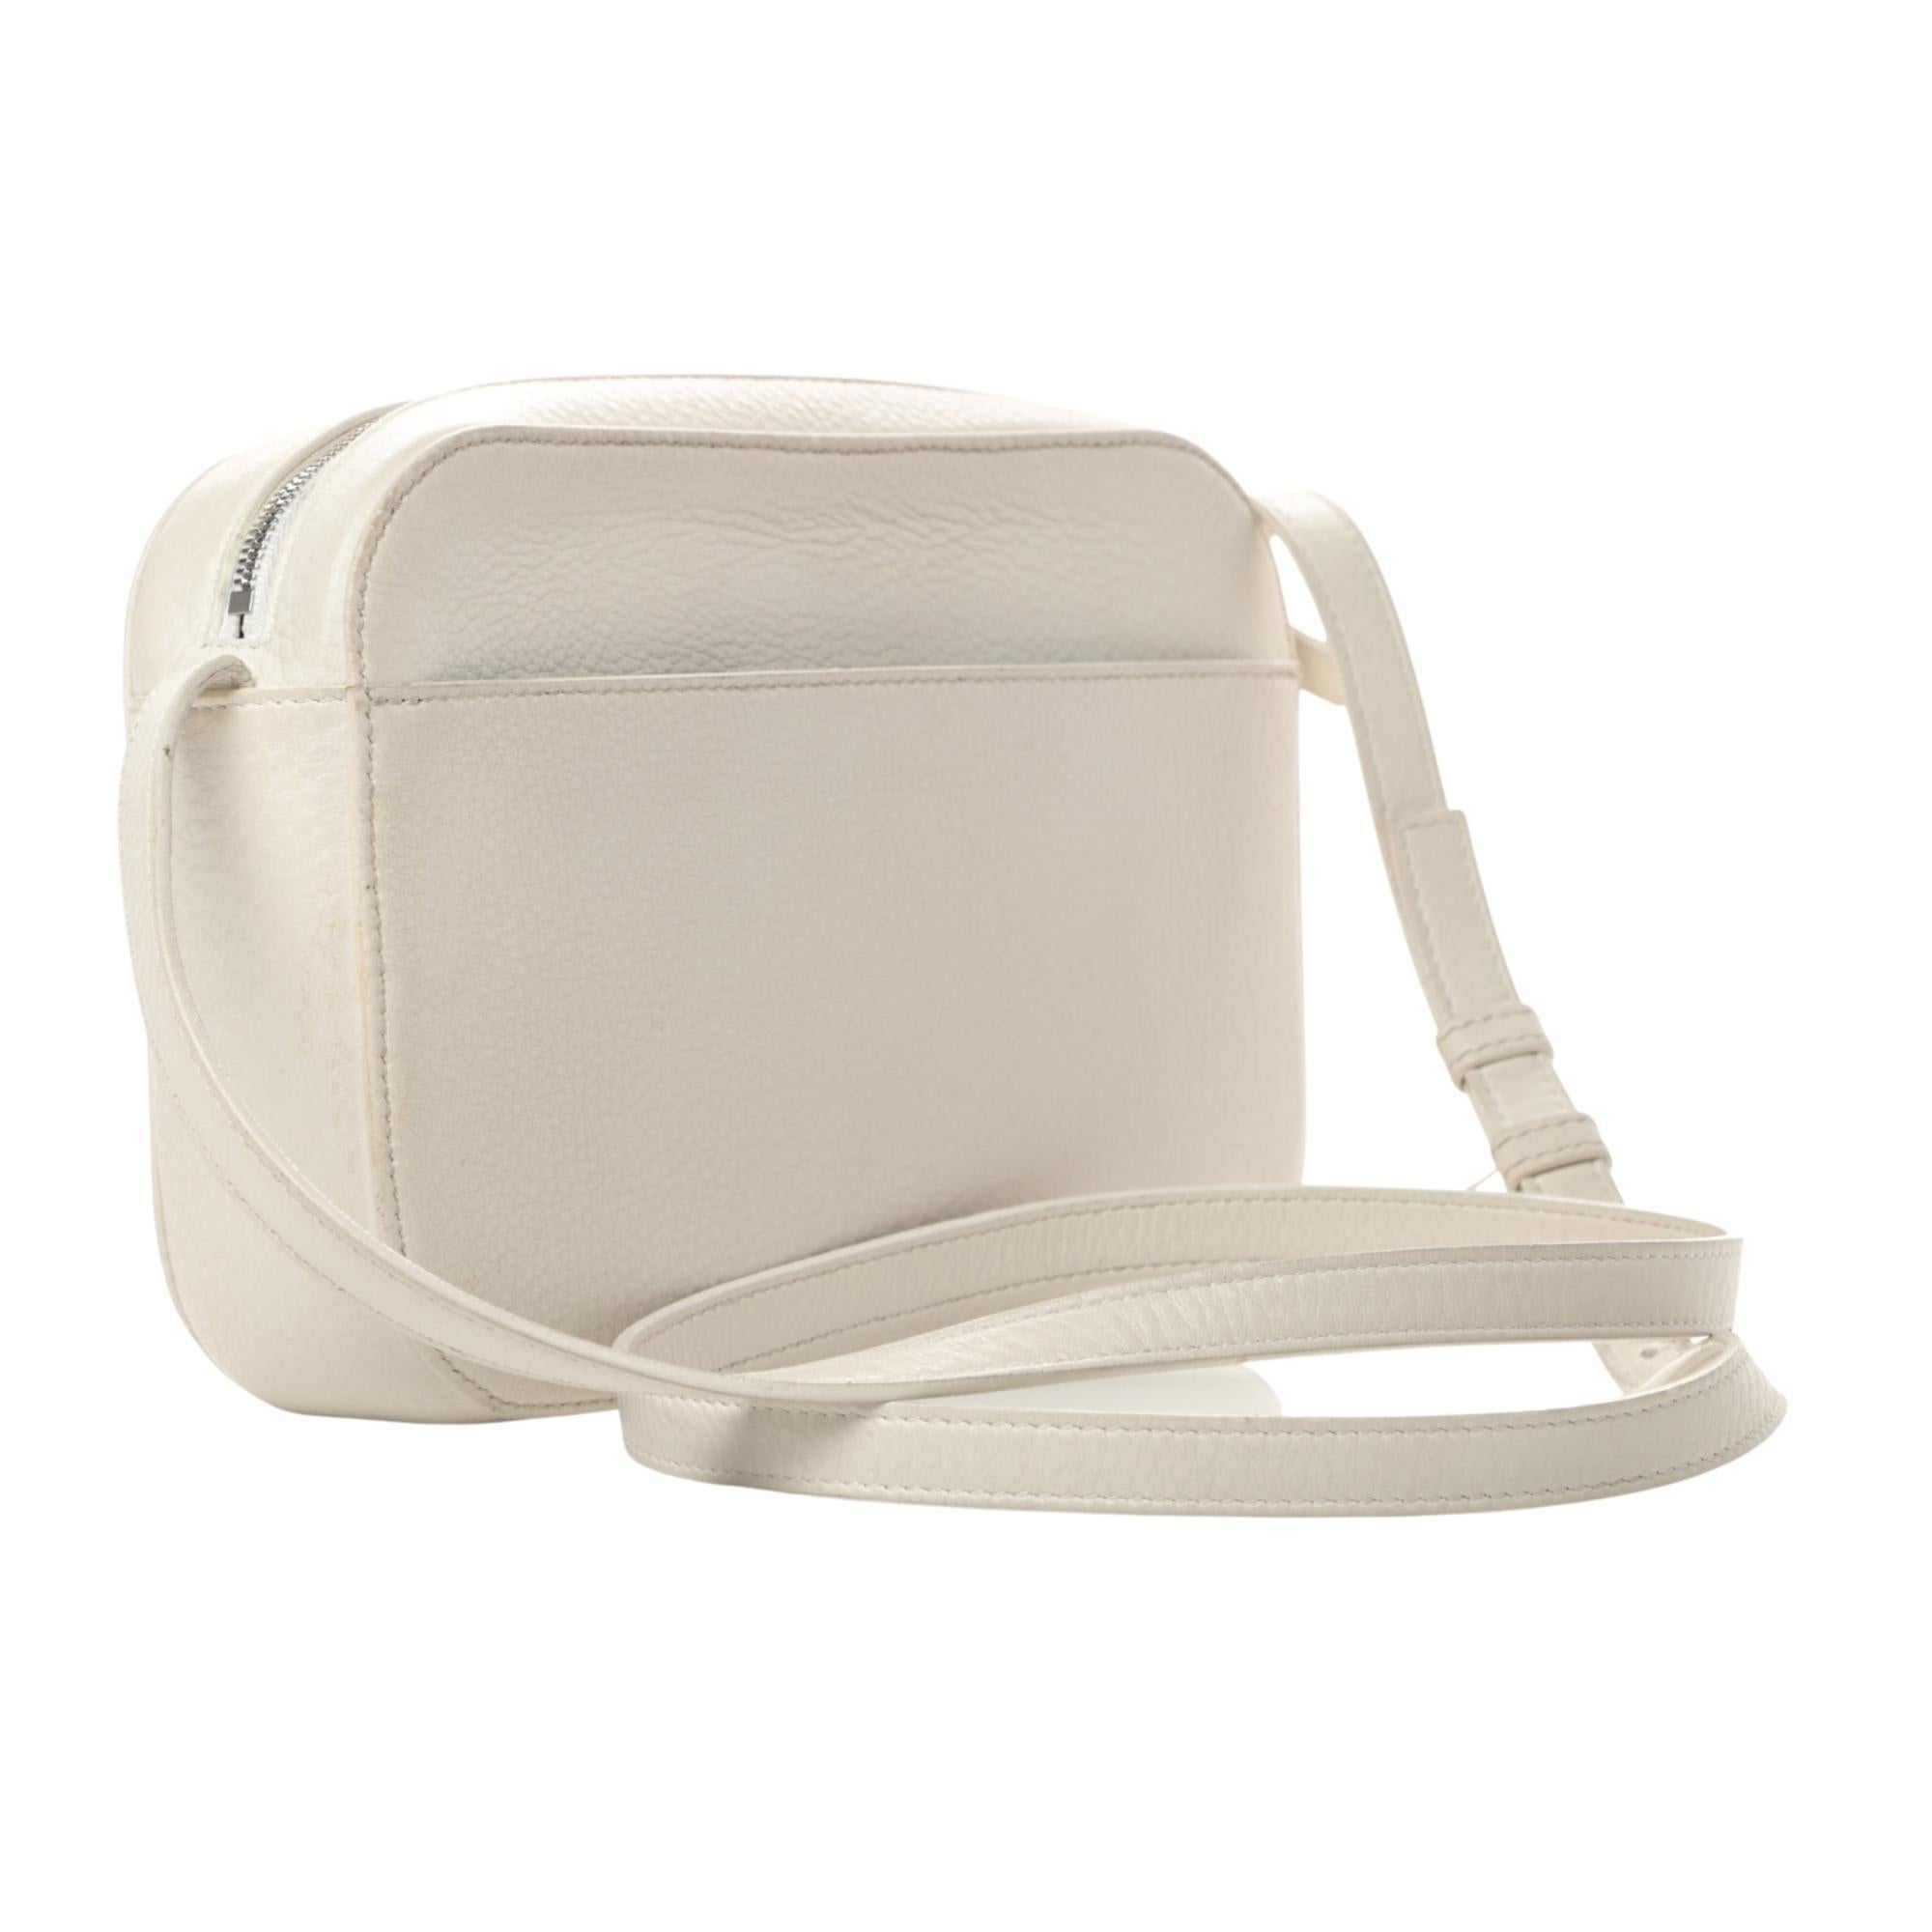 Diese Umhängetasche ist aus weichem Kalbsleder in Weiß gefertigt. Die Handtasche hat eine aufgesetzte Tasche auf der Rückseite, ein weißes Balenciaga-Logo und einen schmalen, verstellbaren Lederriemen. Die Tasche ist innen mit schwarzem Leder